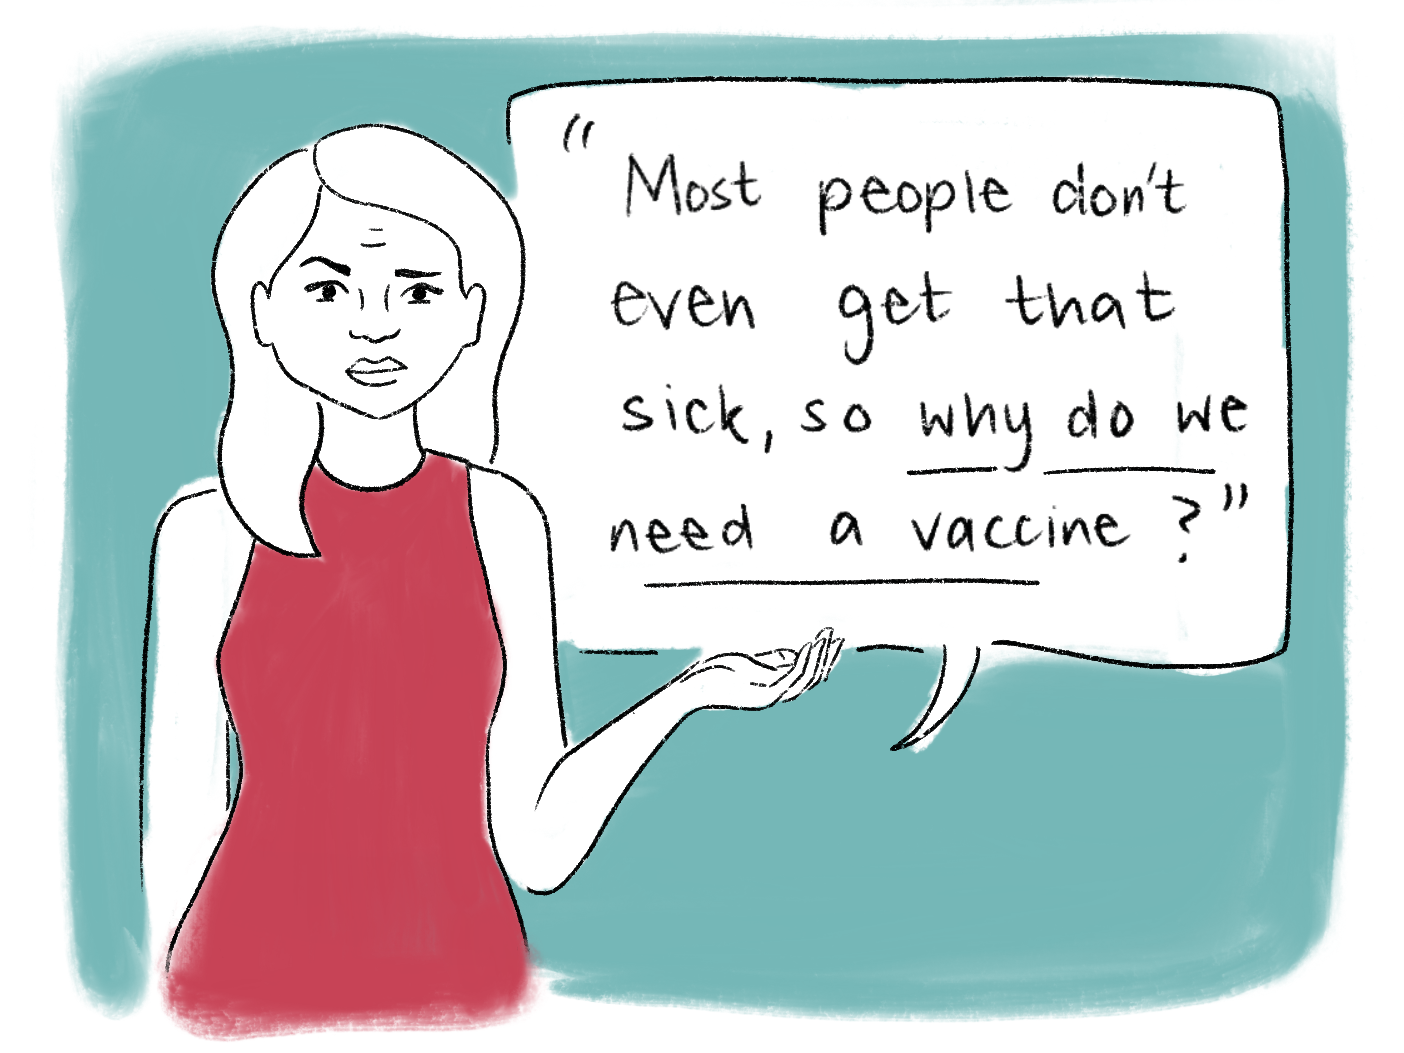 Vaccination comic scene 18. Read the transcript below.